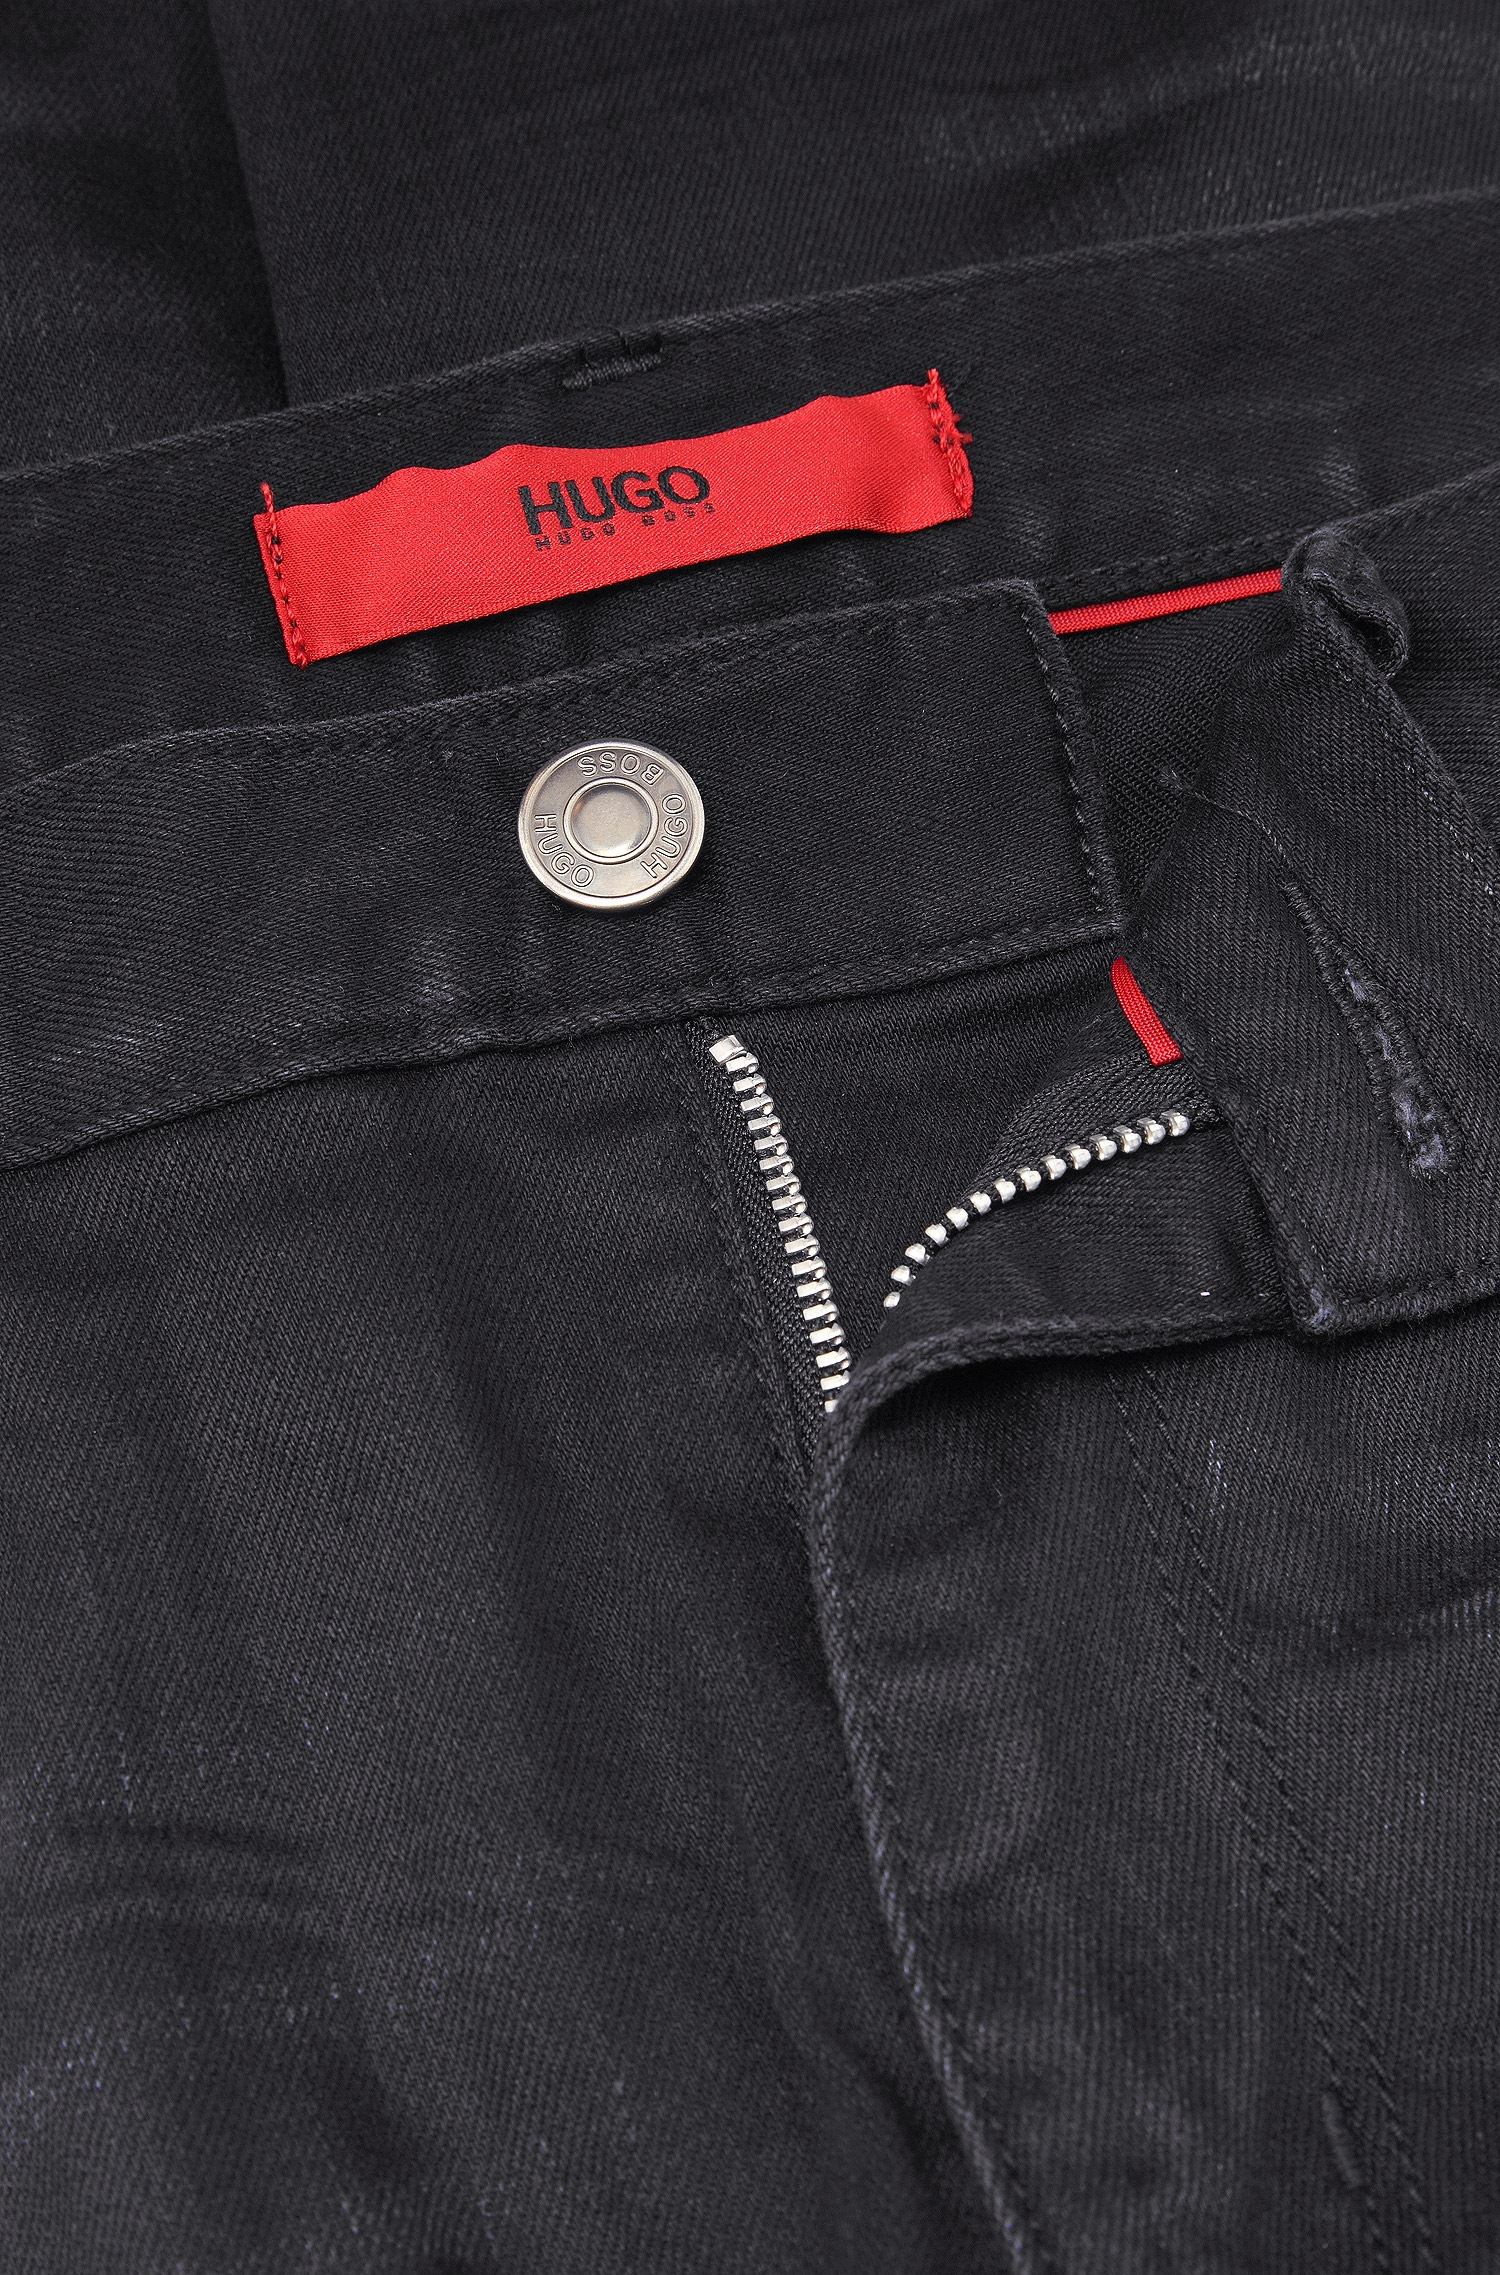 hugo boss 734 skinny jeans